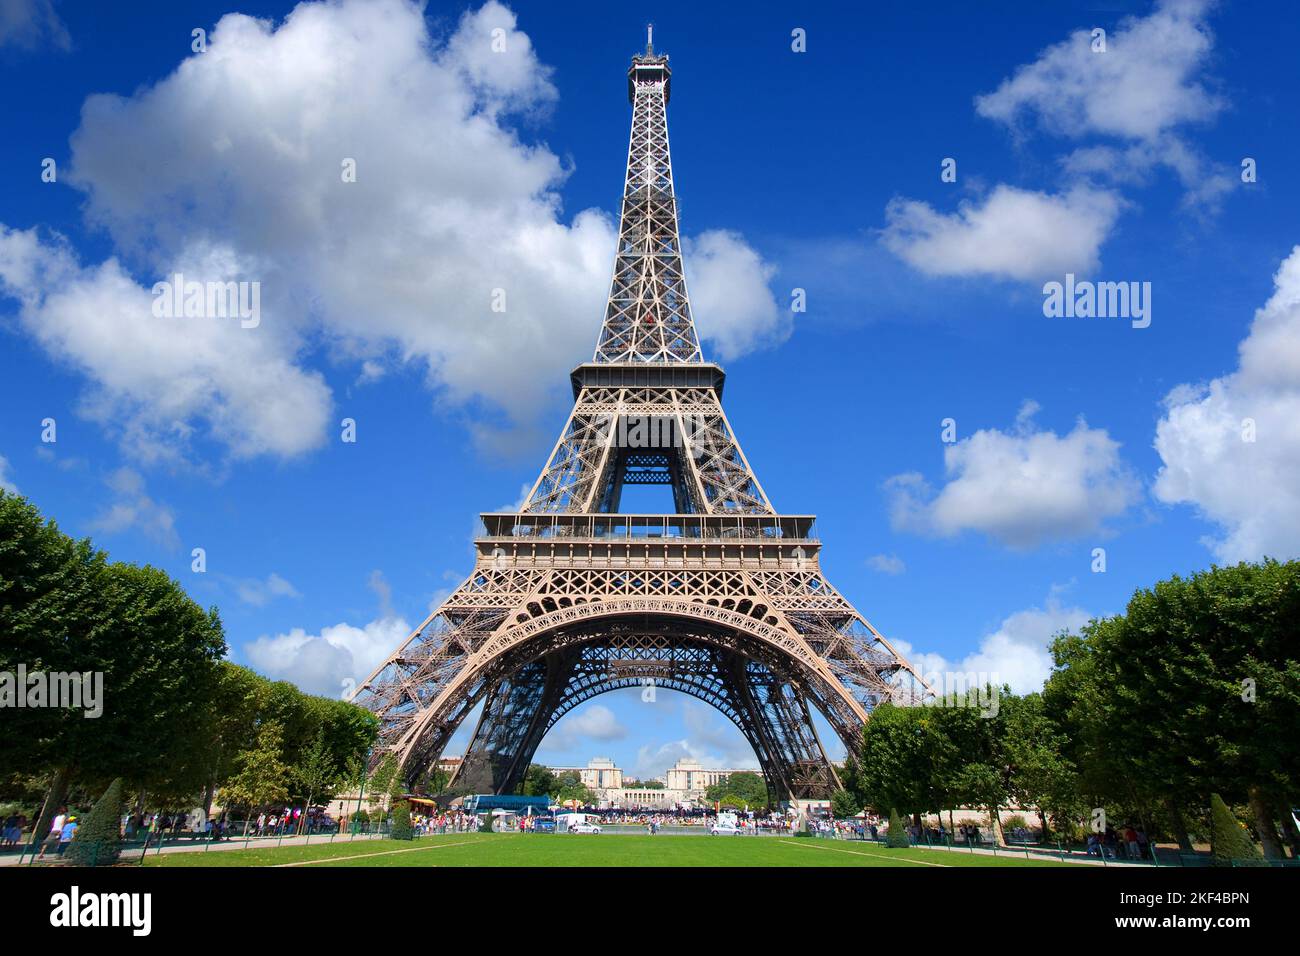 Europa, Frankreich, Paris, Eiffelturm, 330 m hoch, Champ de Mars. Banque D'Images